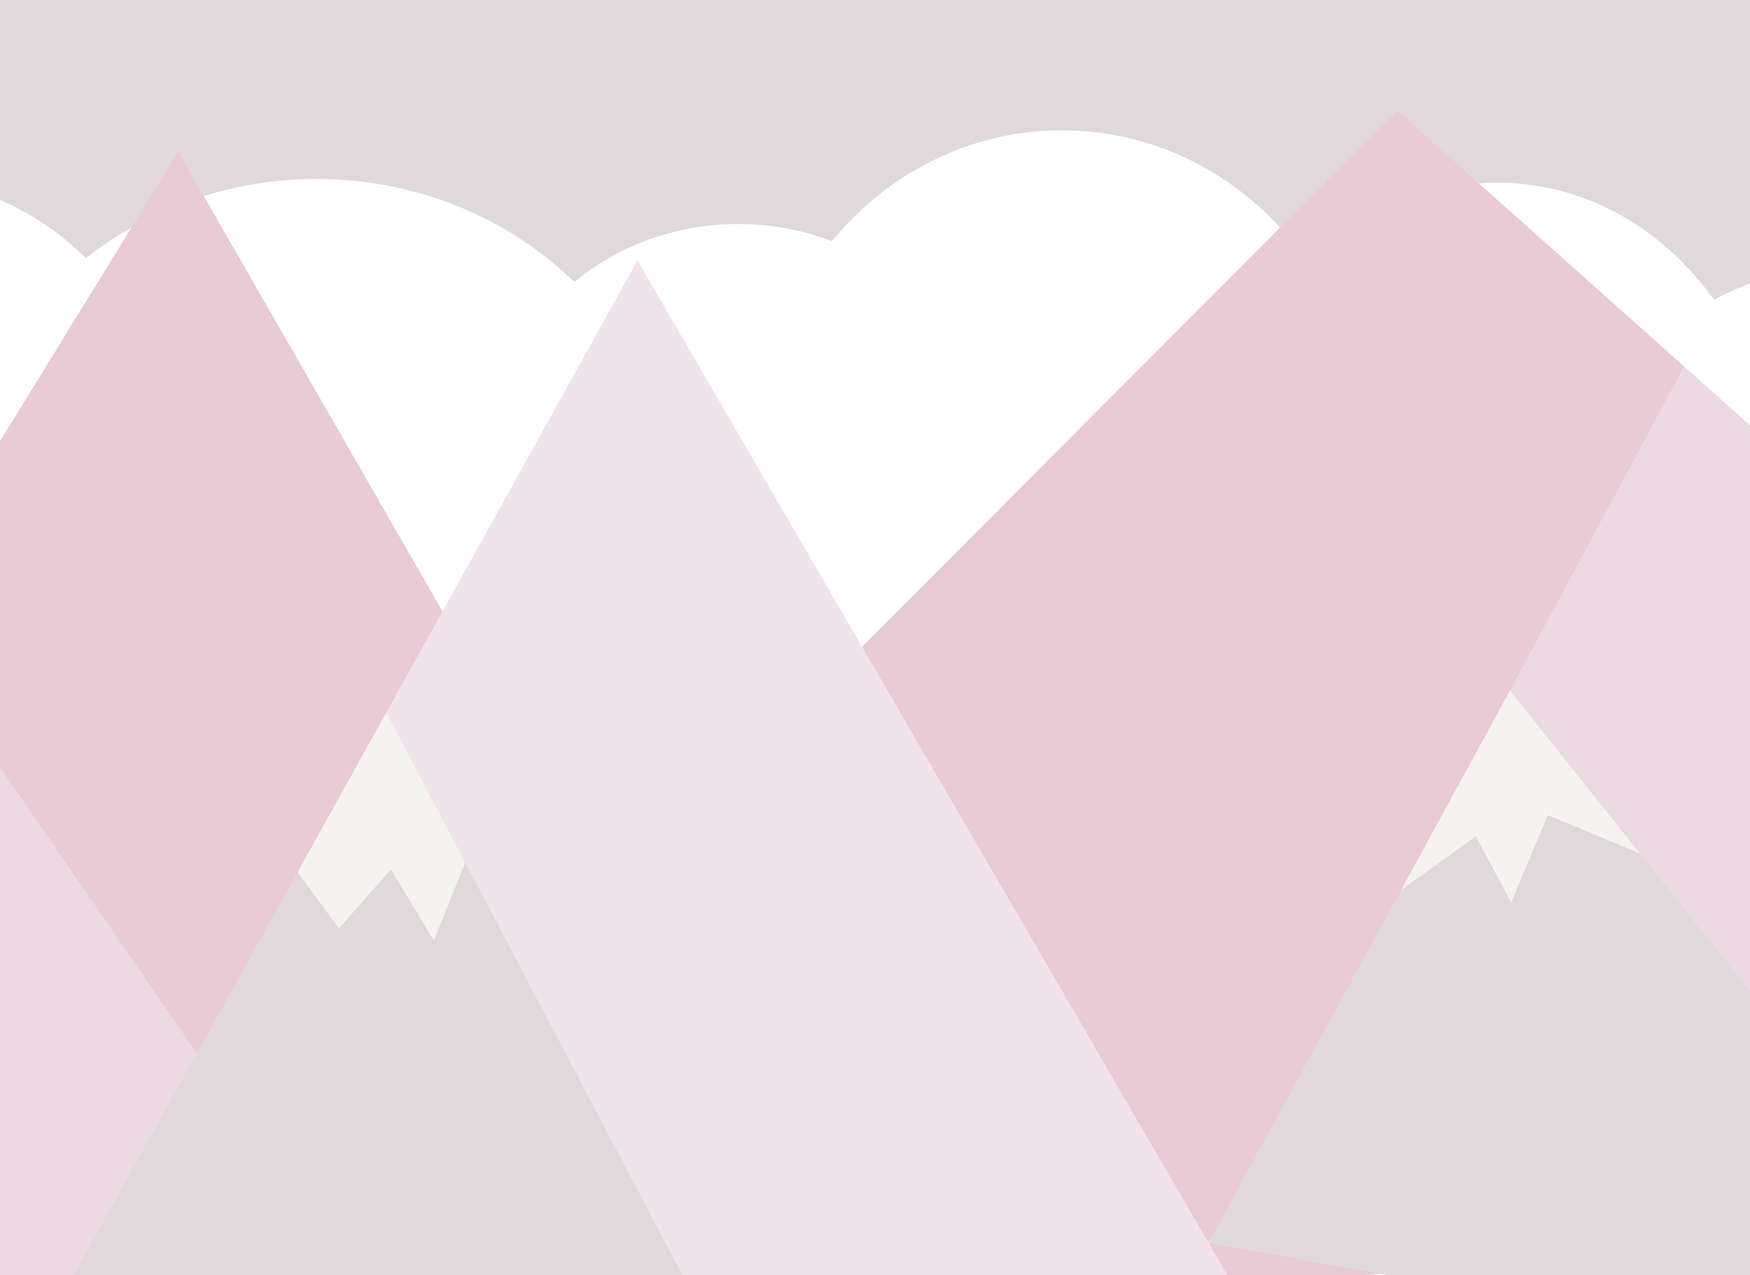             Fototapete Kinderzimmer Berge mit Wolken – Rosa, Weiß, Grau
        